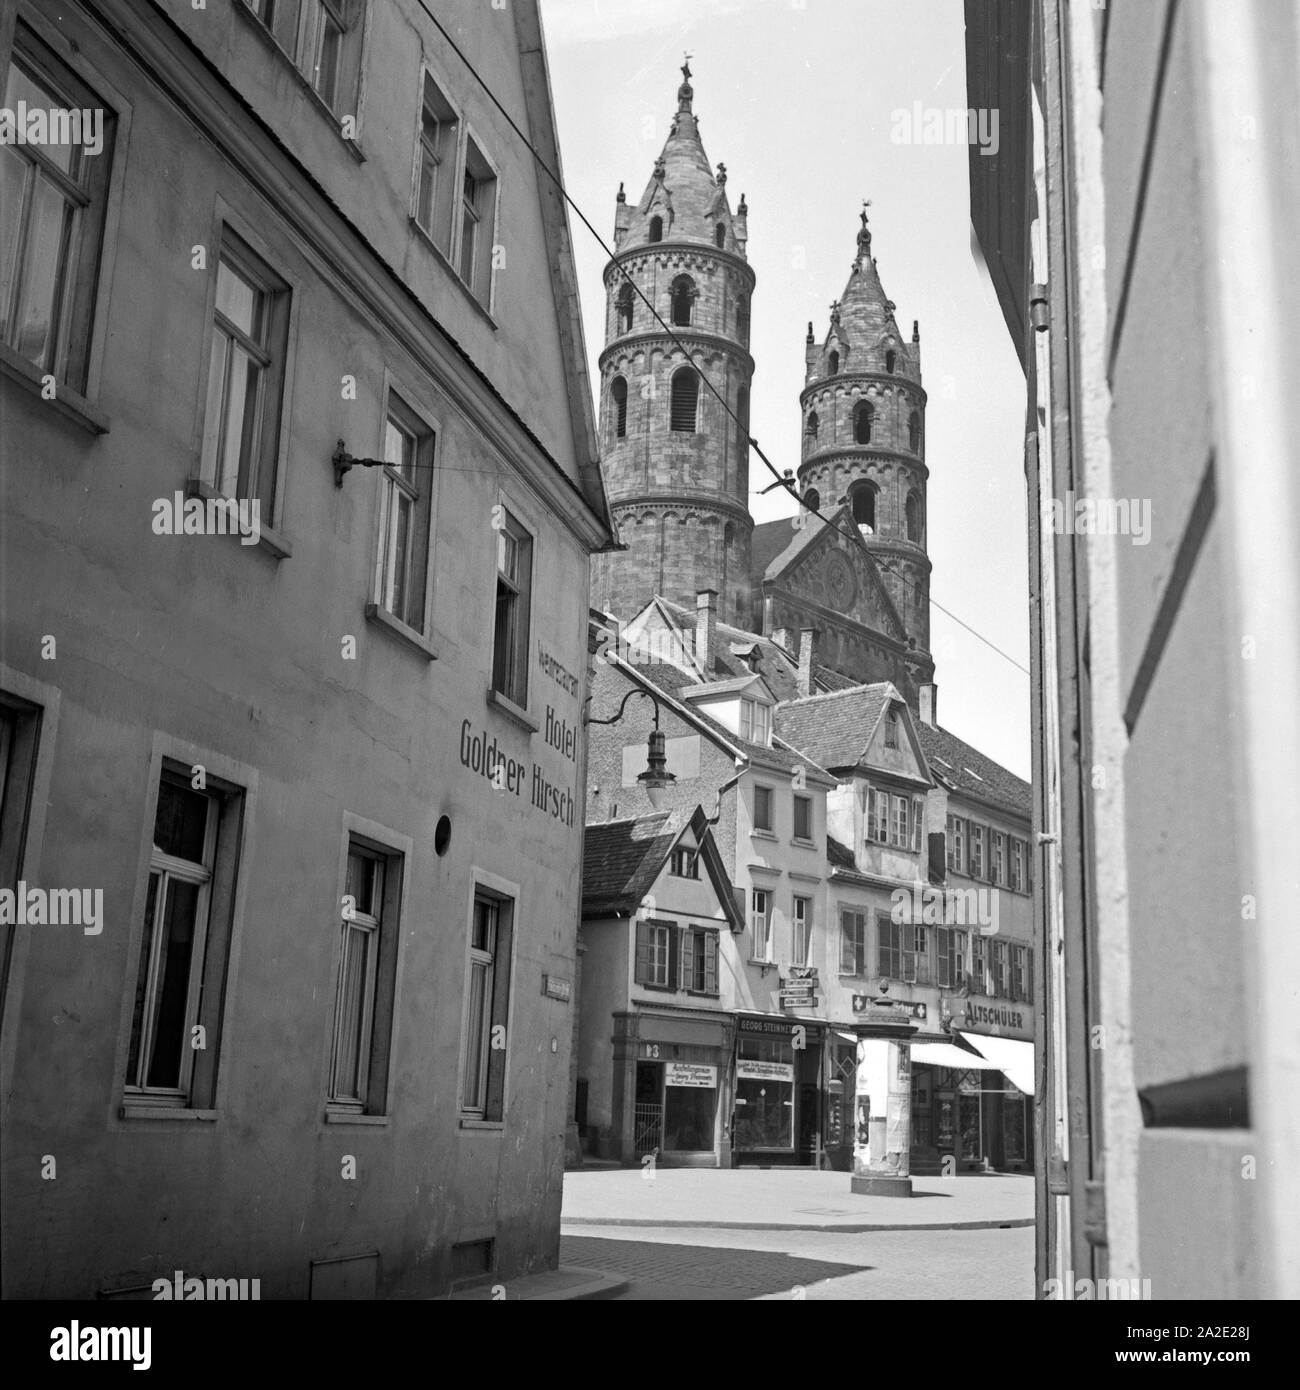 Der Dom zu Worms, durch die Häuser der Altstadt gesehen, Deutschland 1930er Jahre. Worms cathedral, seen through the houses of the old city, Germany 1930s. Stock Photo